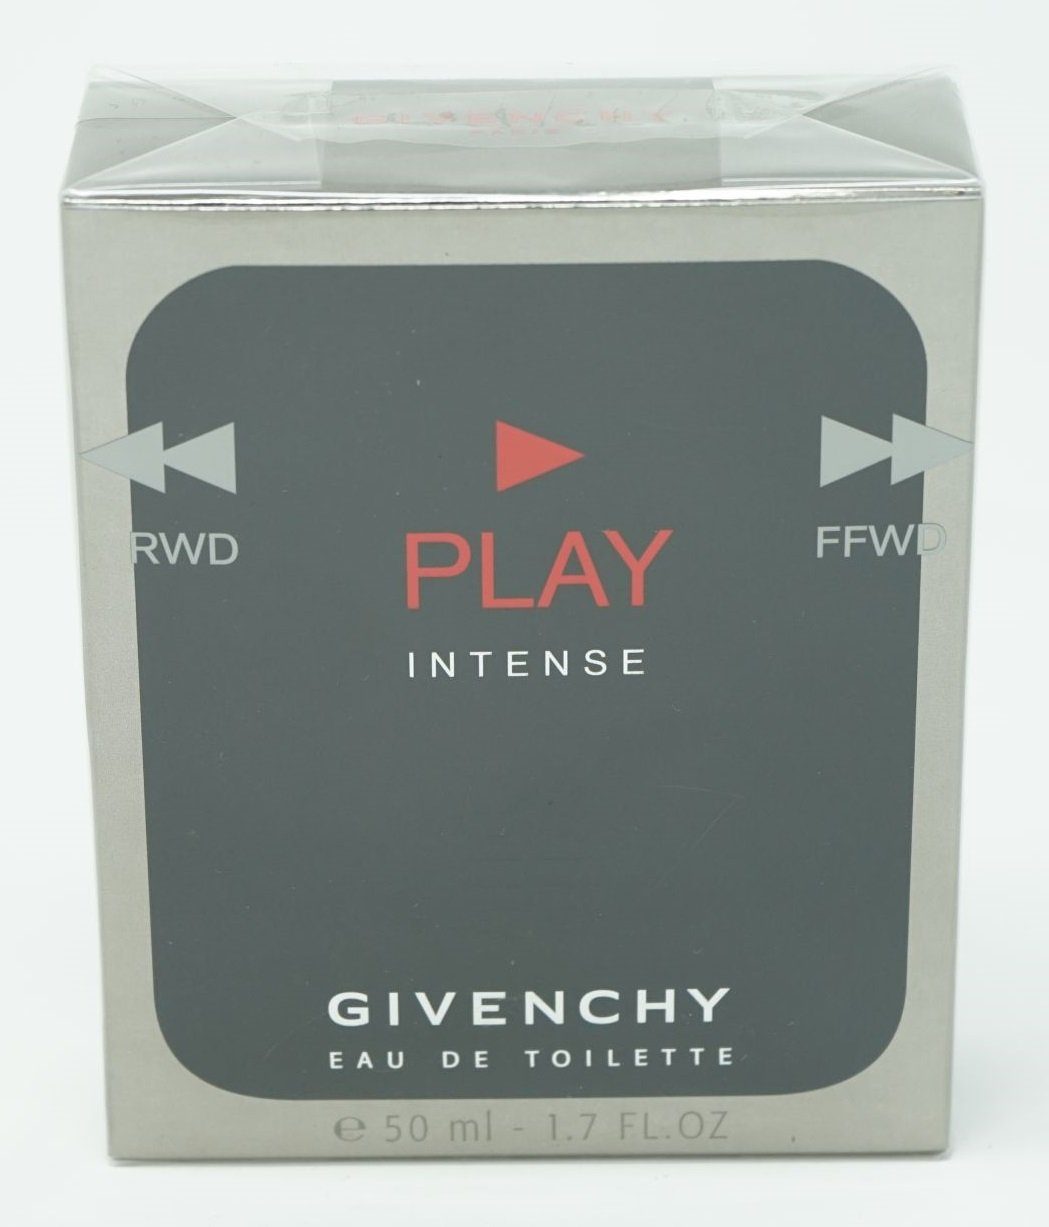 GIVENCHY Eau de Toilette Givenchy Play Intense Eau de Toilette 50ml